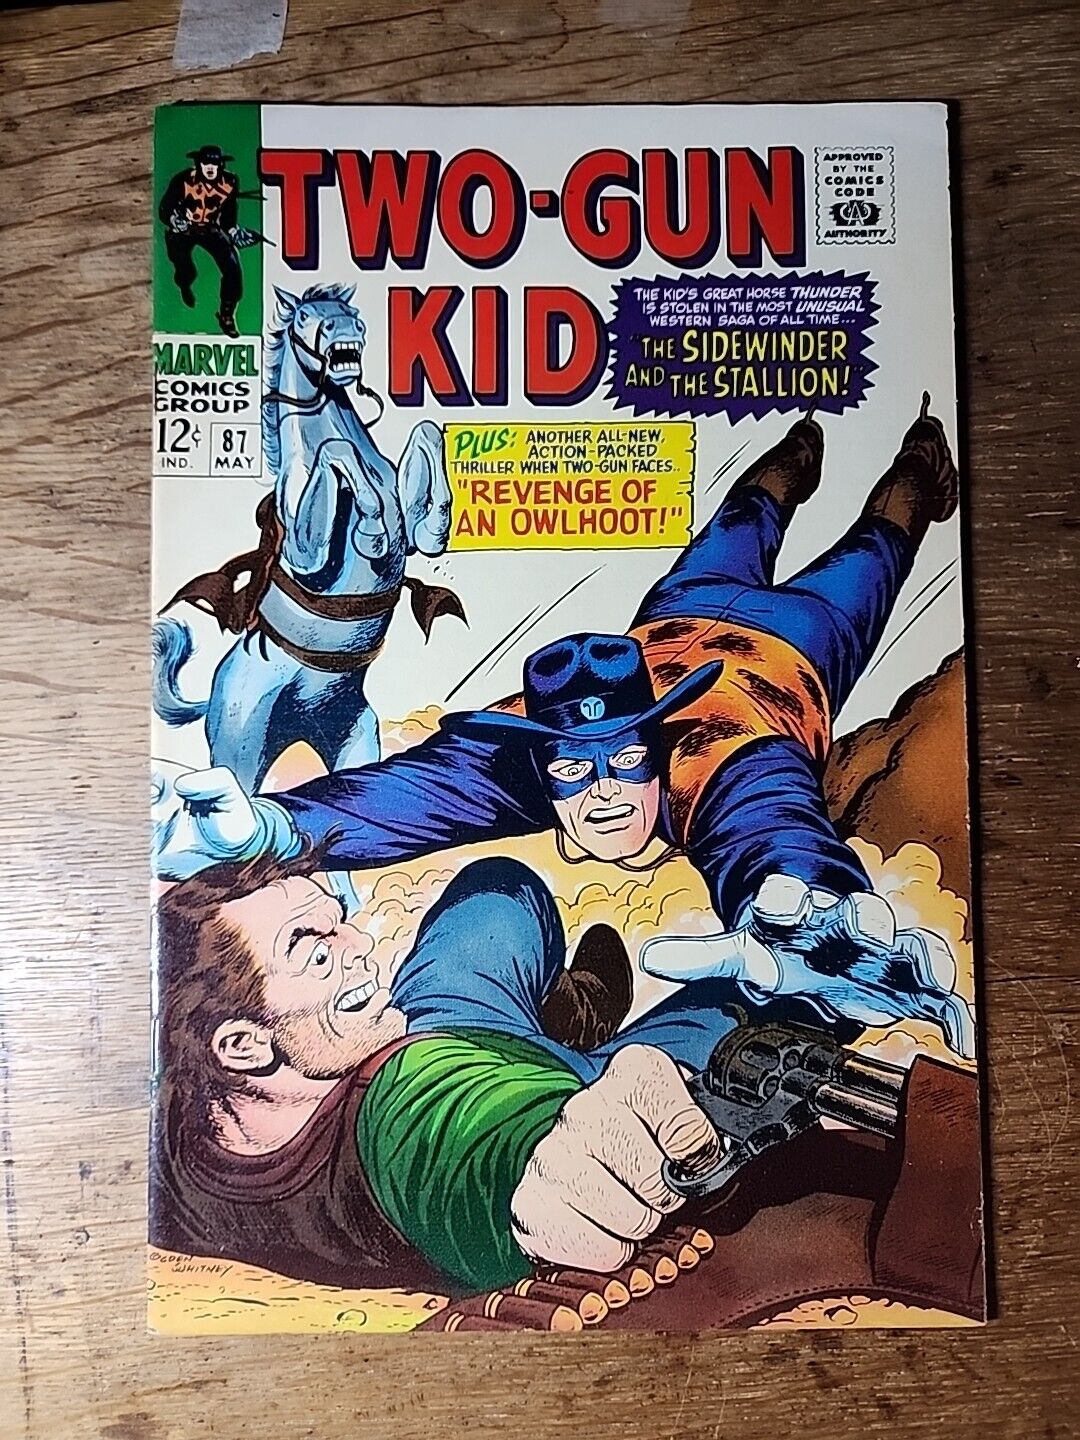 Two-Gun Kid No. 87 May 1967 - Marvel Silver Age Cowboy Comic